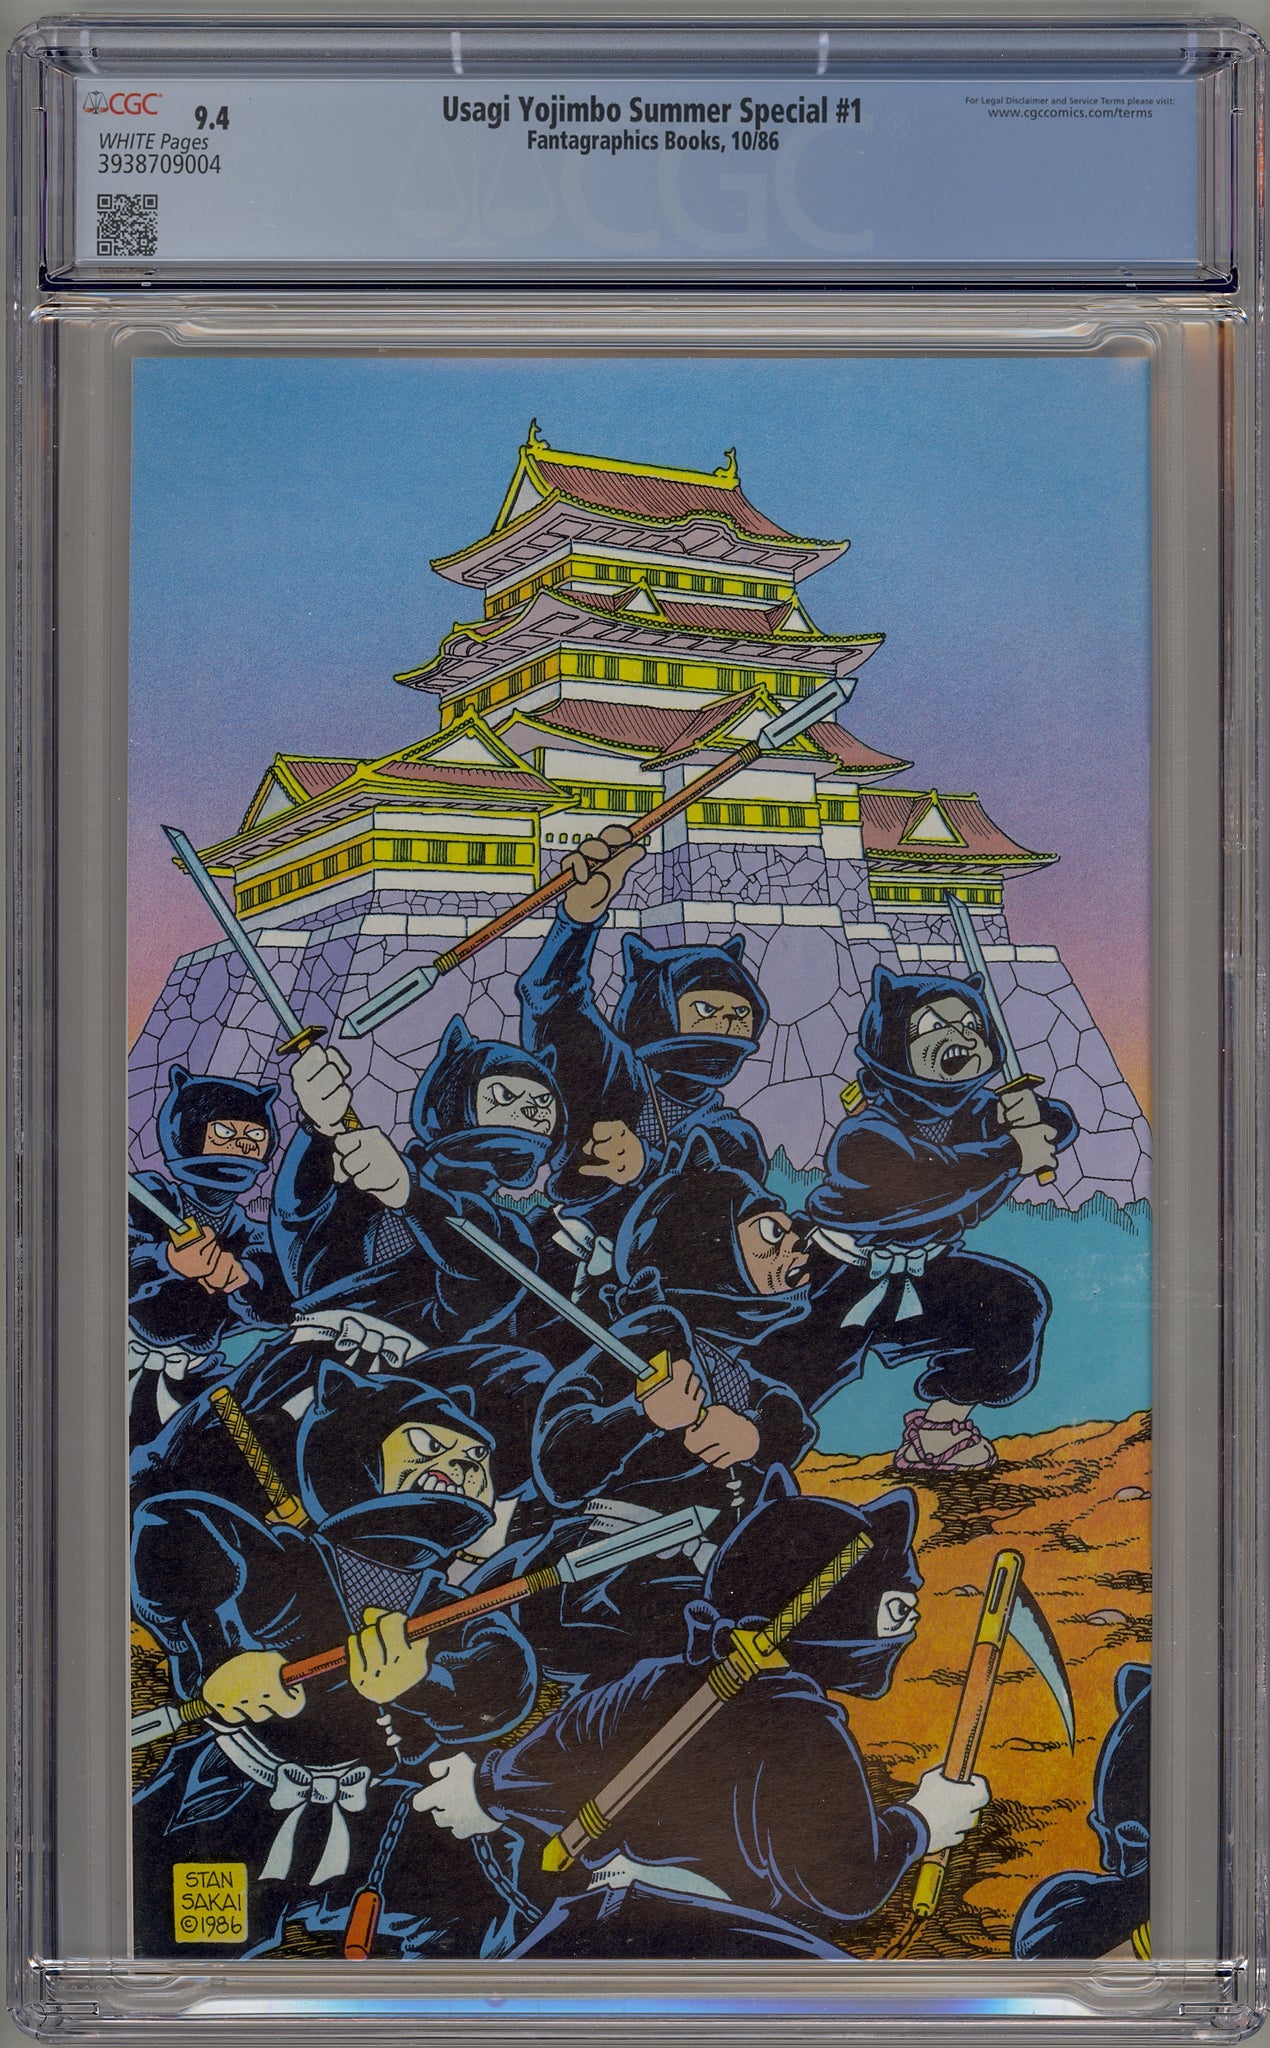 Usagi Yojimbo Summer Special #1 (1986)